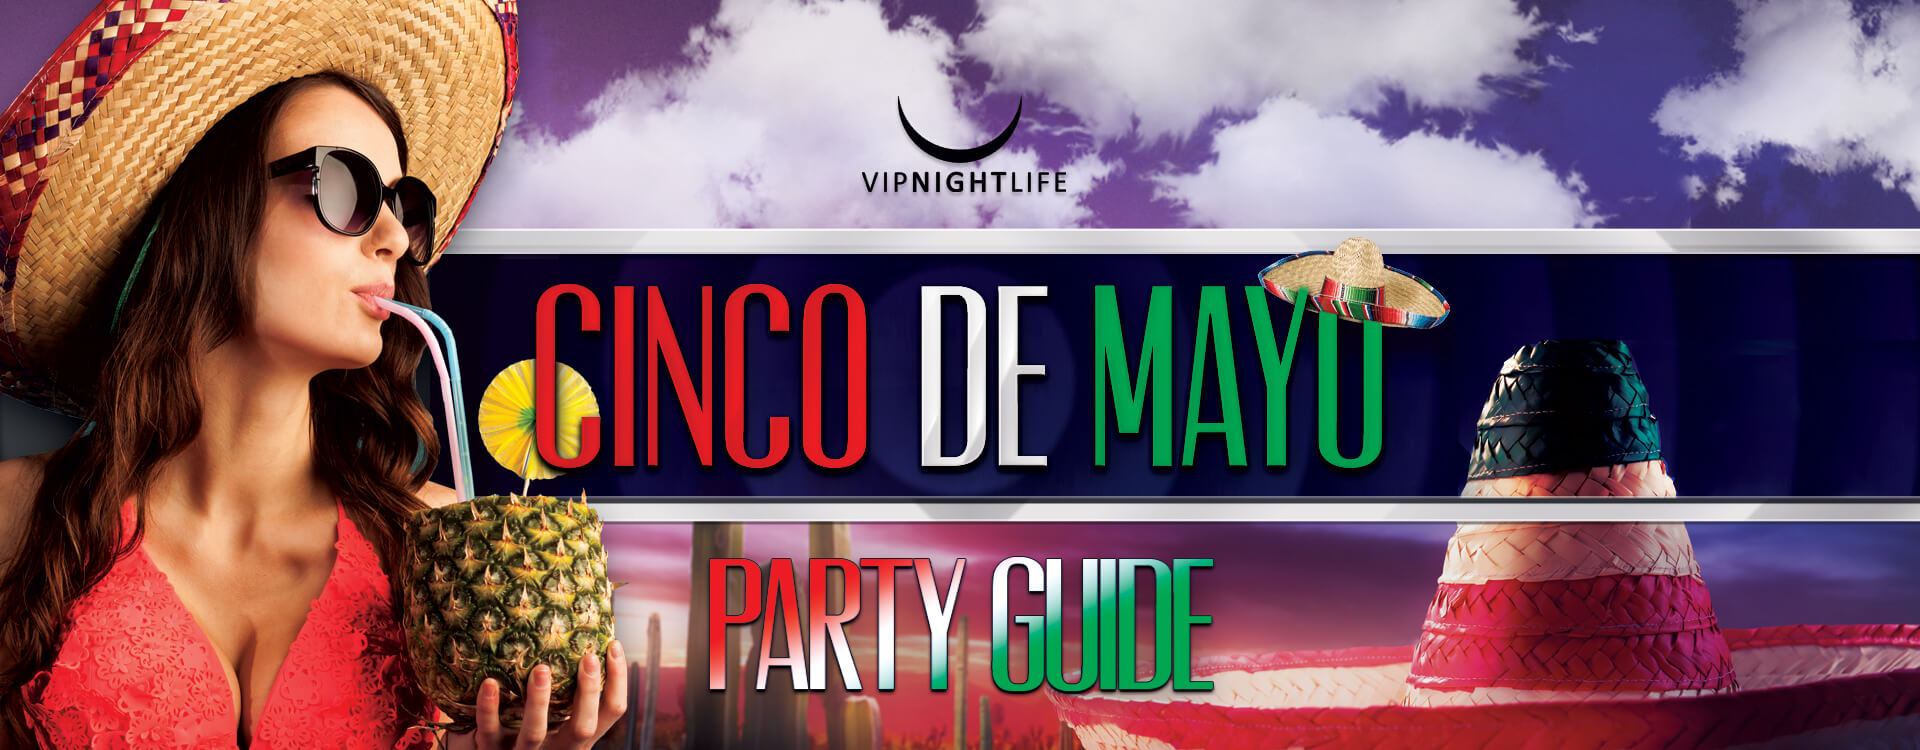 Cinco De Mayo Special Events Guide